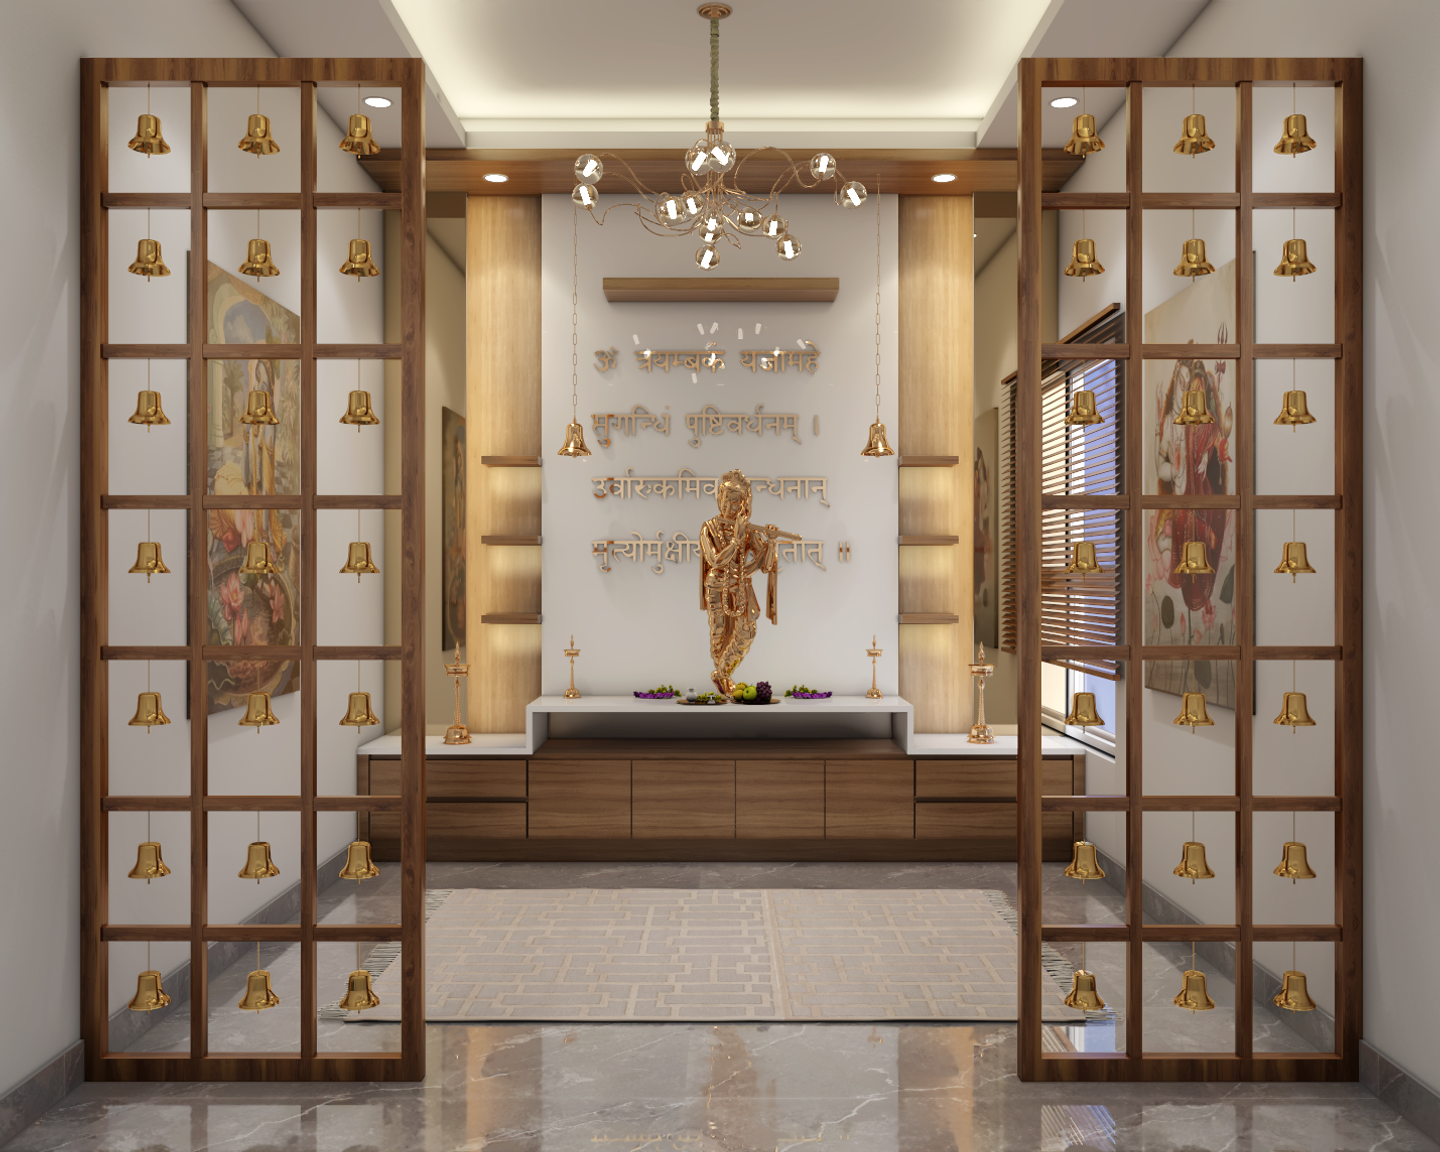 Modern Pooja Room with Golden Bells - Livspace